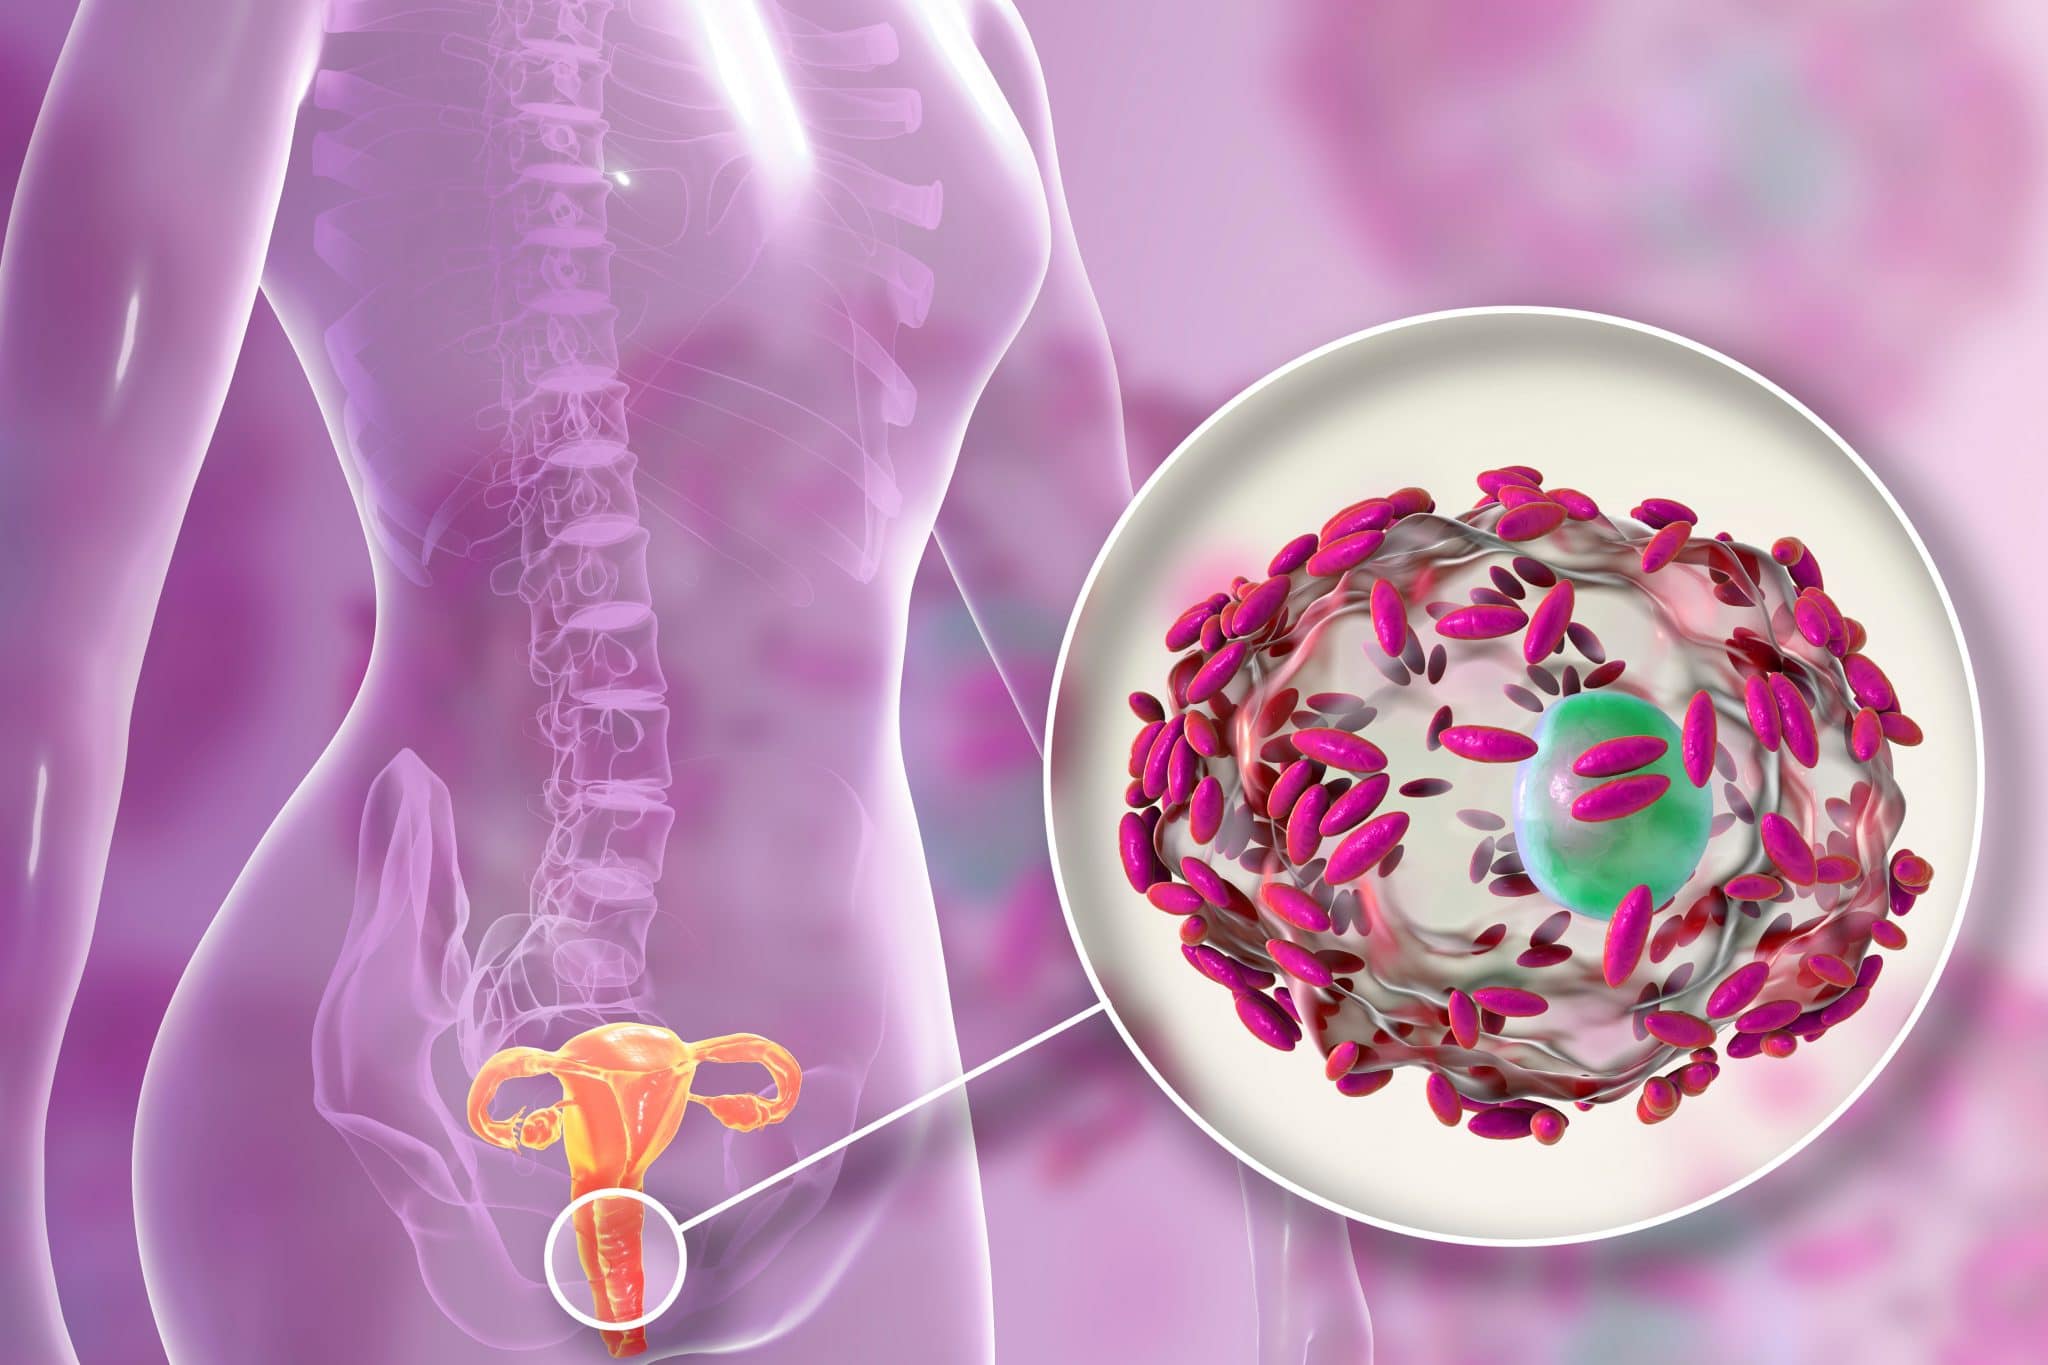 Illustration numérique de l'anatomie humaine mettant en évidence une glande surrénale et une vue agrandie des hormones du cortex surrénalien, soulignant l'importance de la santé vaginale.